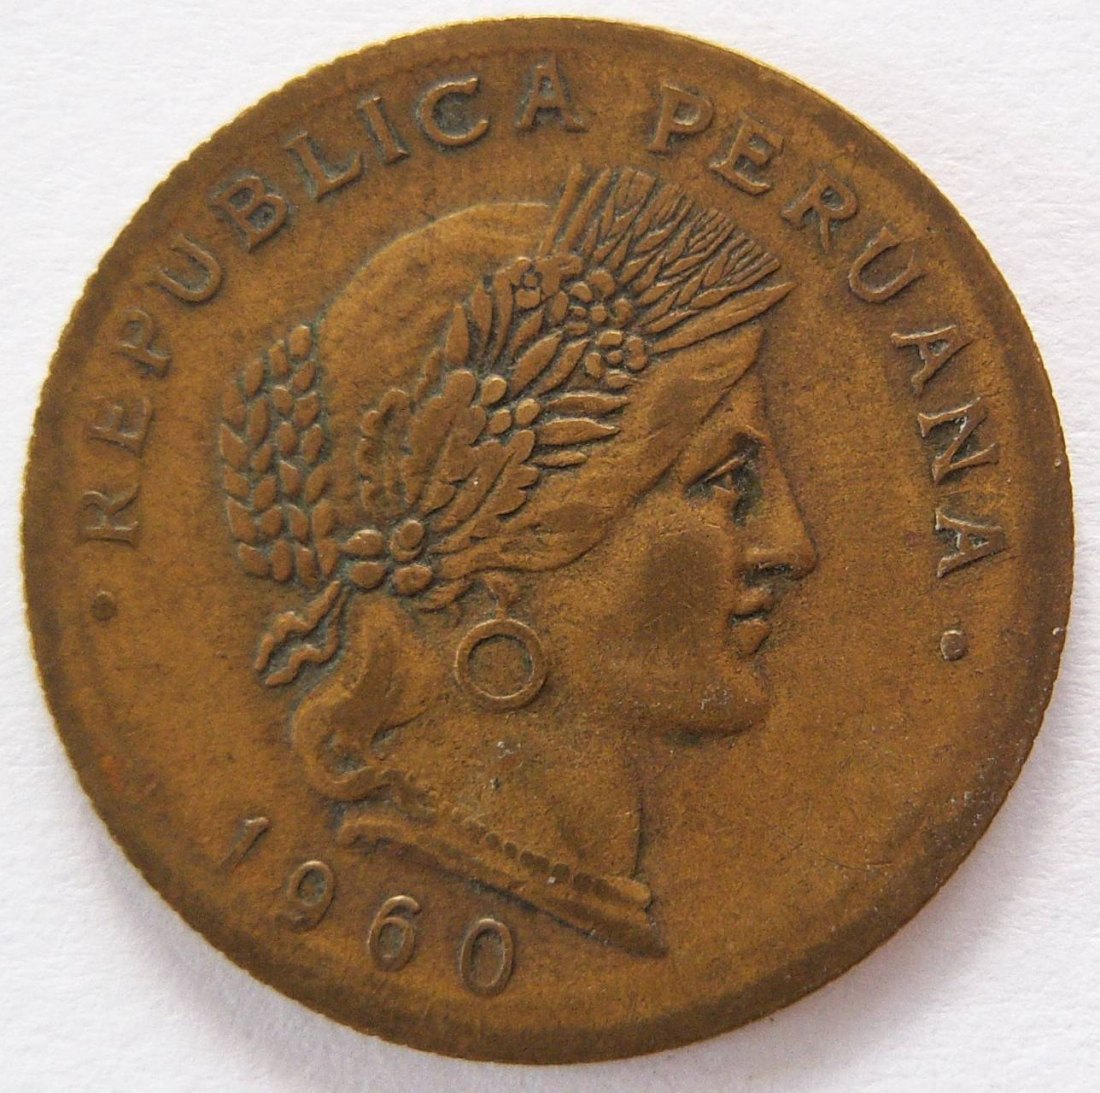  Peru 20 Centavos 1960   